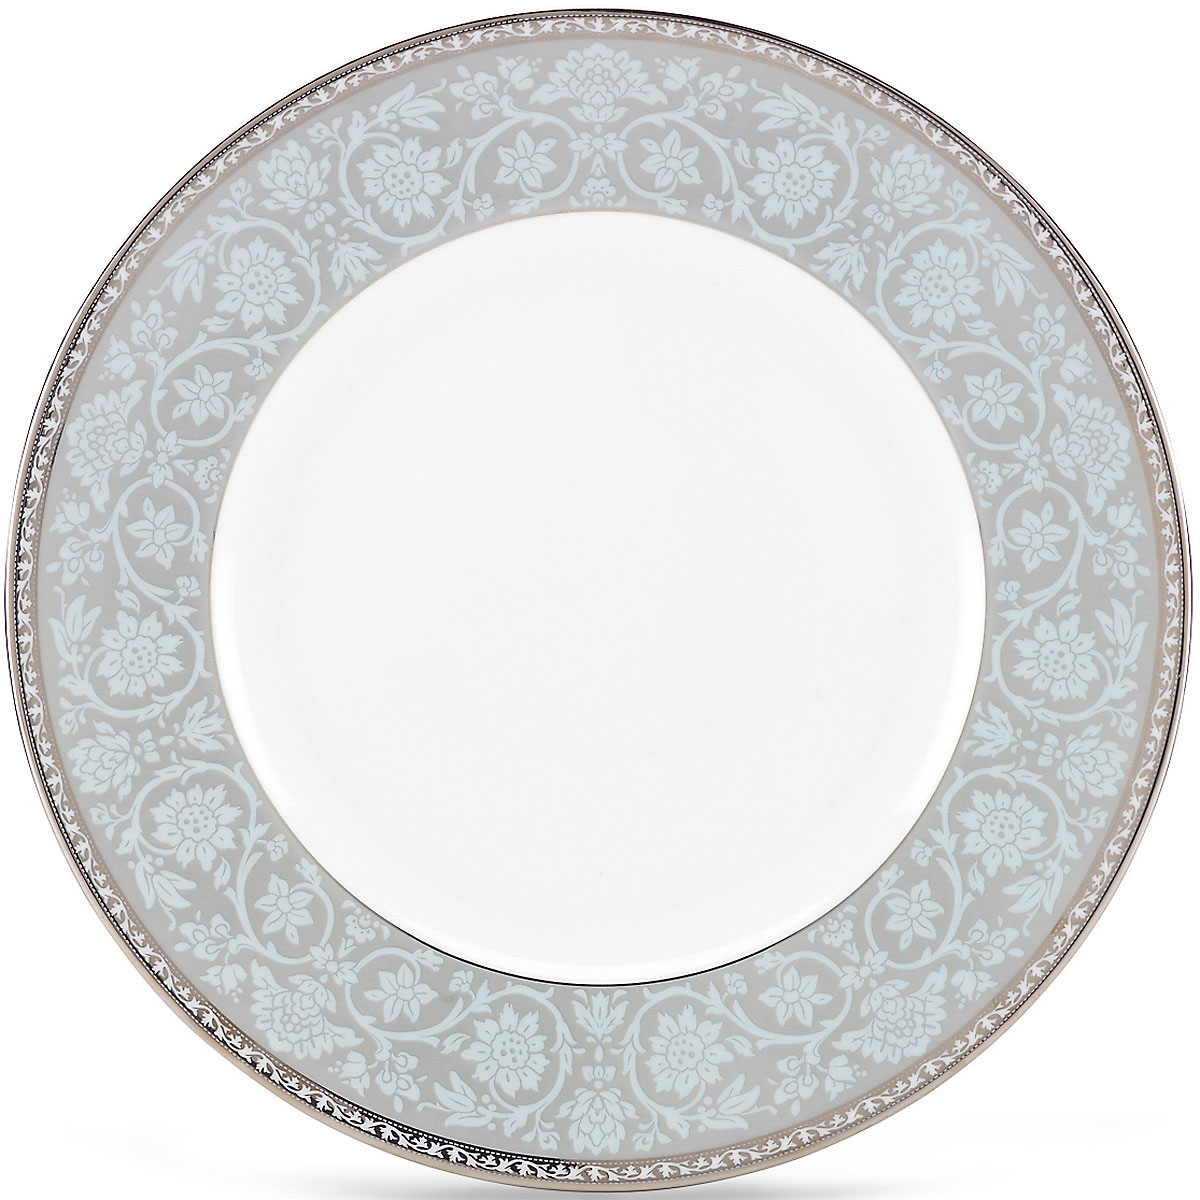 Lenox Westmore Dinner Plate